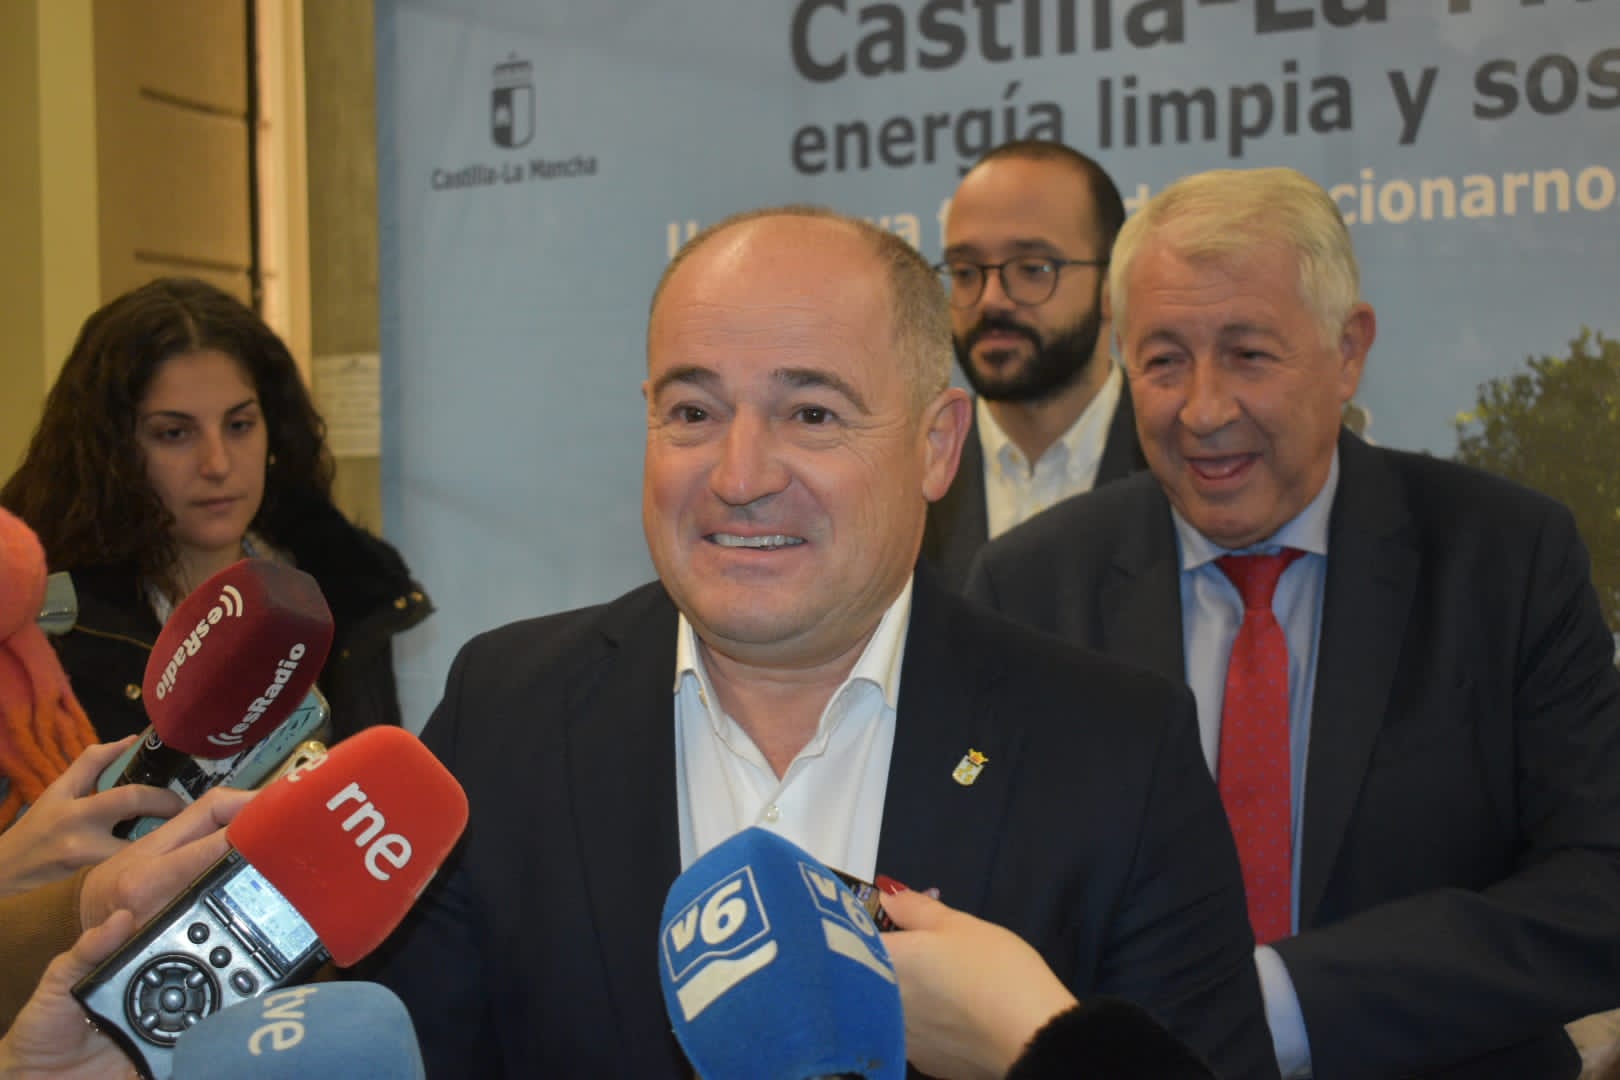 El alcalde de Albacete, Emilio Sáez, anuncia la creación de la primera comunidad energética de la ciudad.